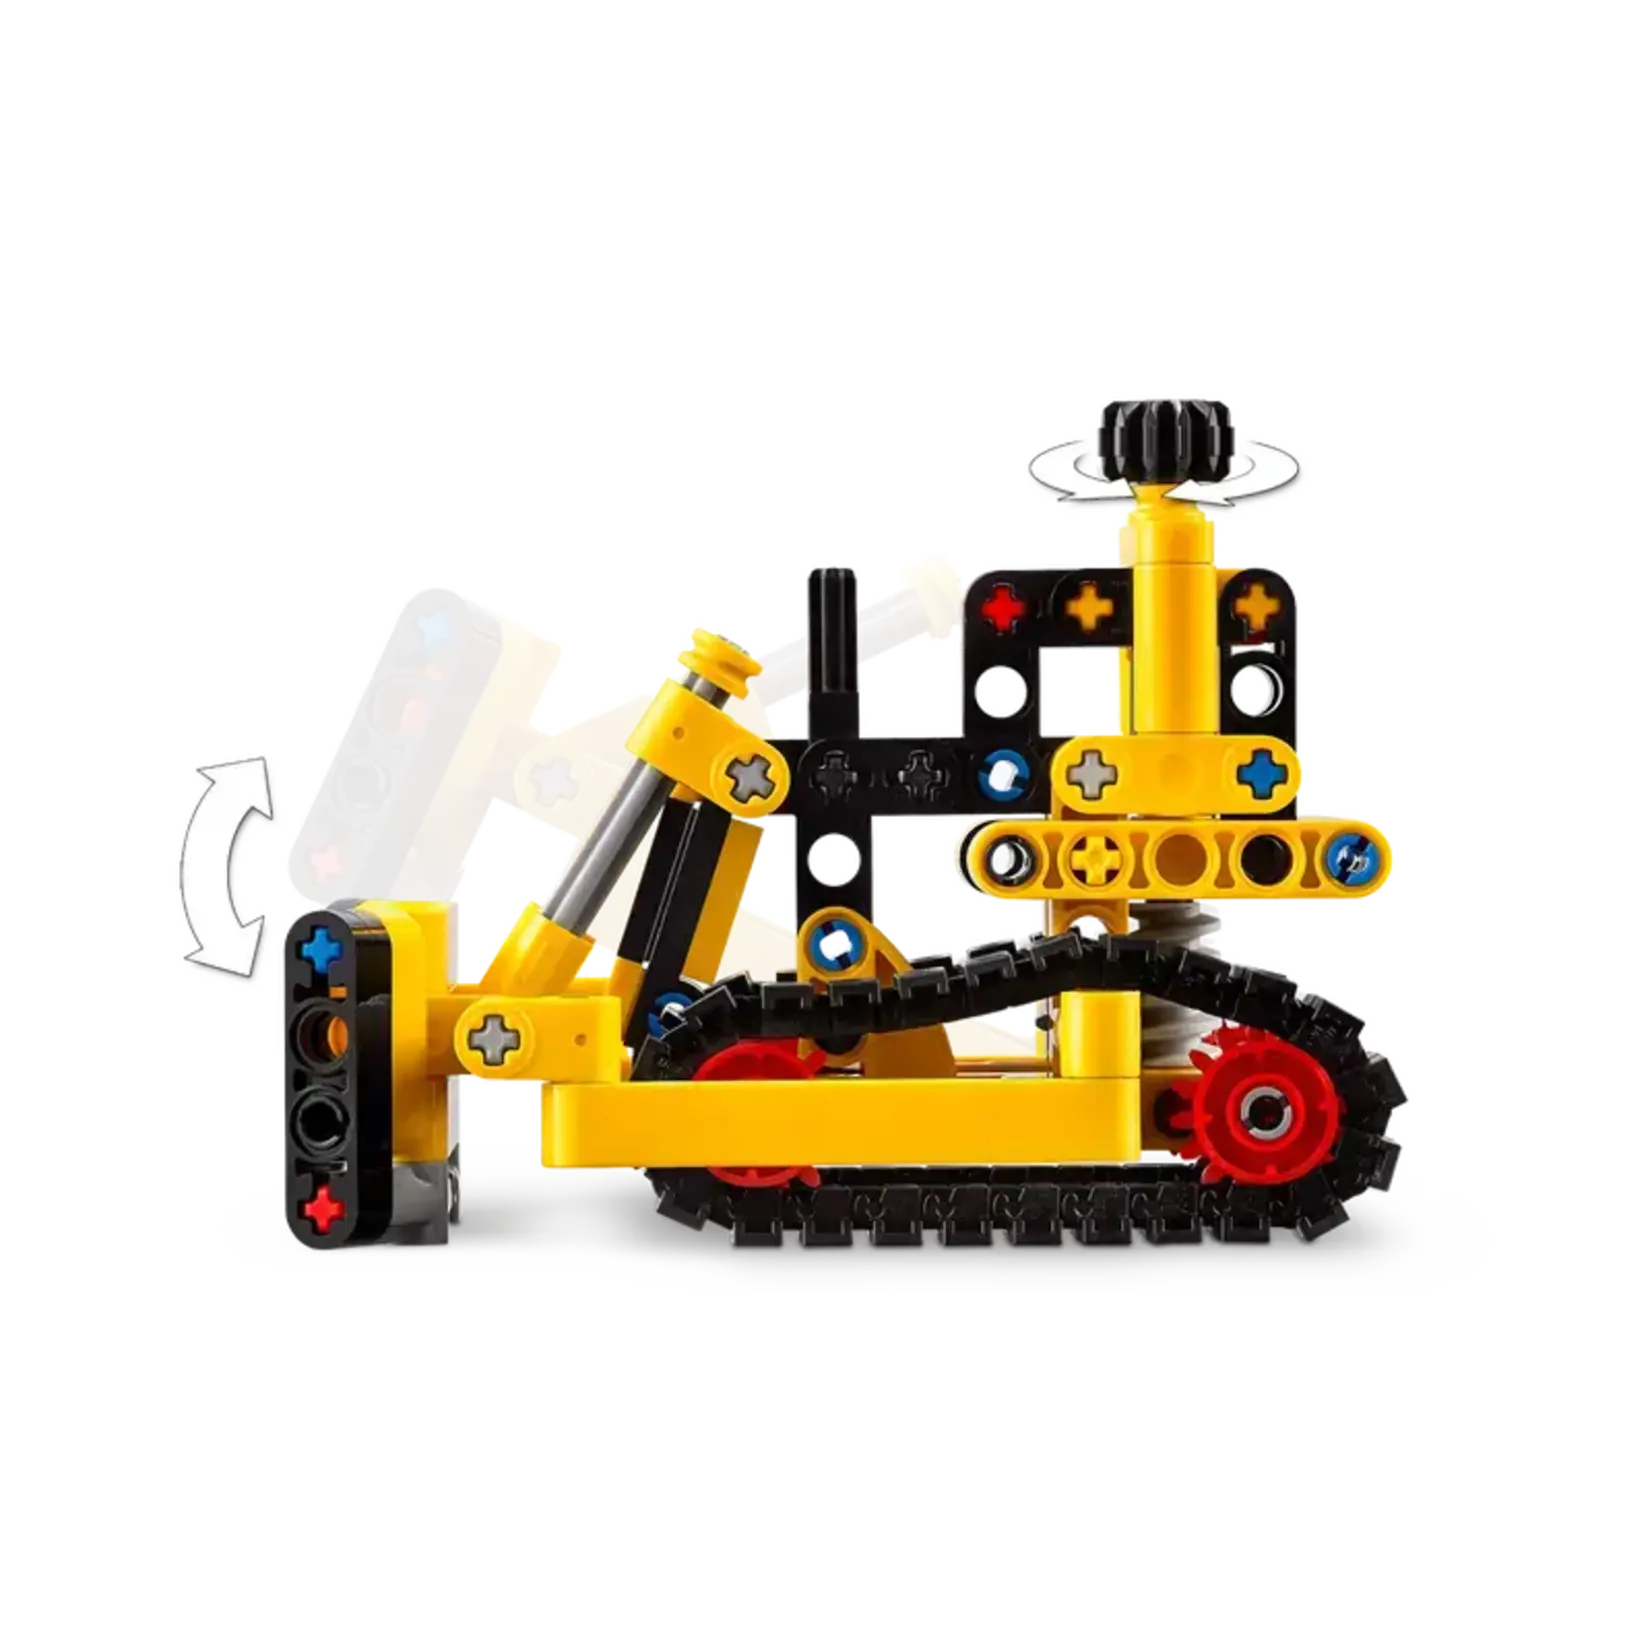 Lego Technic Heavy-Duty Bulldozer